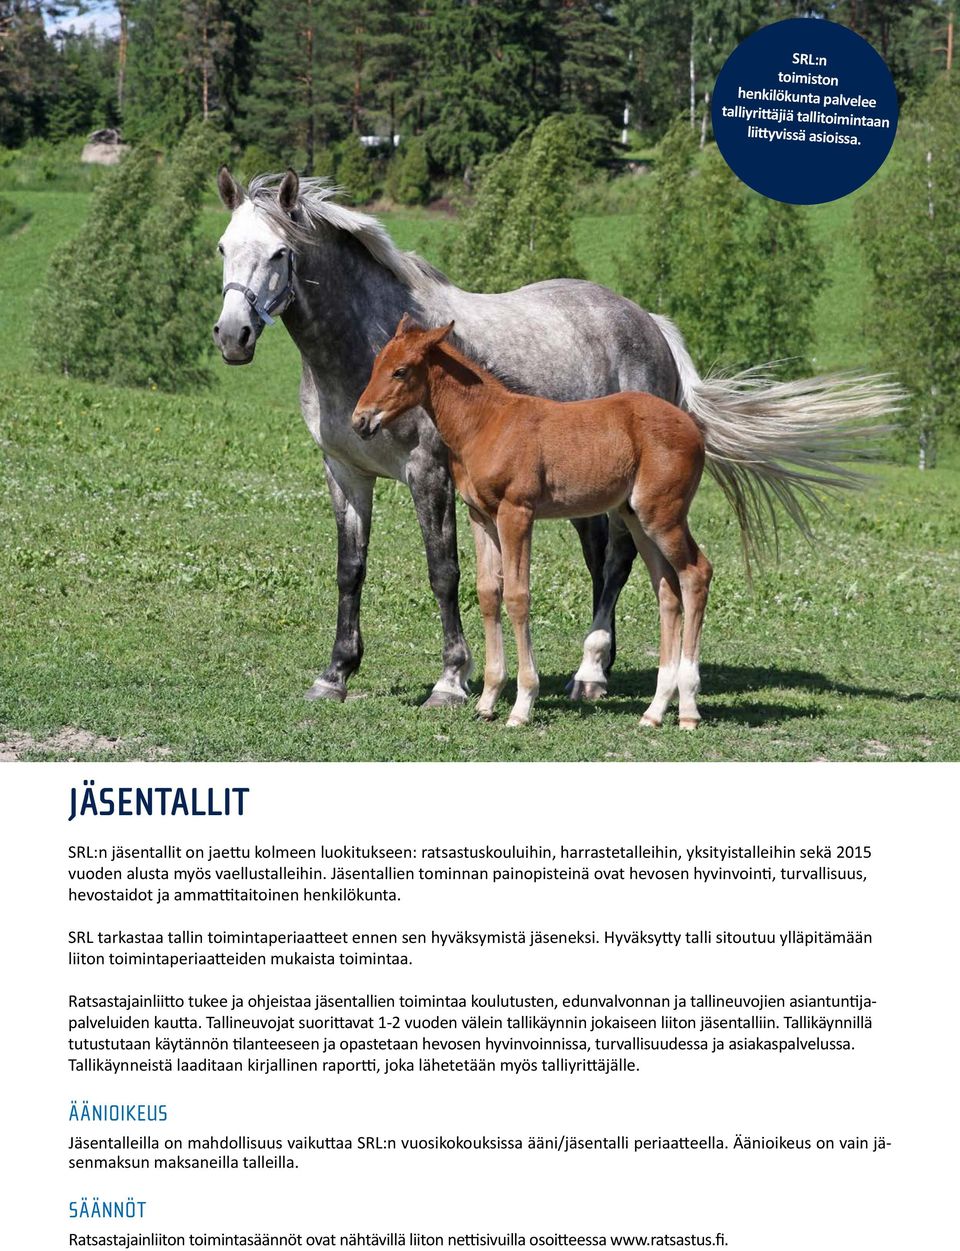 vaellustalleihin. kolmeen luokitukseen: Jäsentallien ratsastuskouluihin, tominnan painopisteinä harraste- ovat ja hevosen yksityistalleihin.